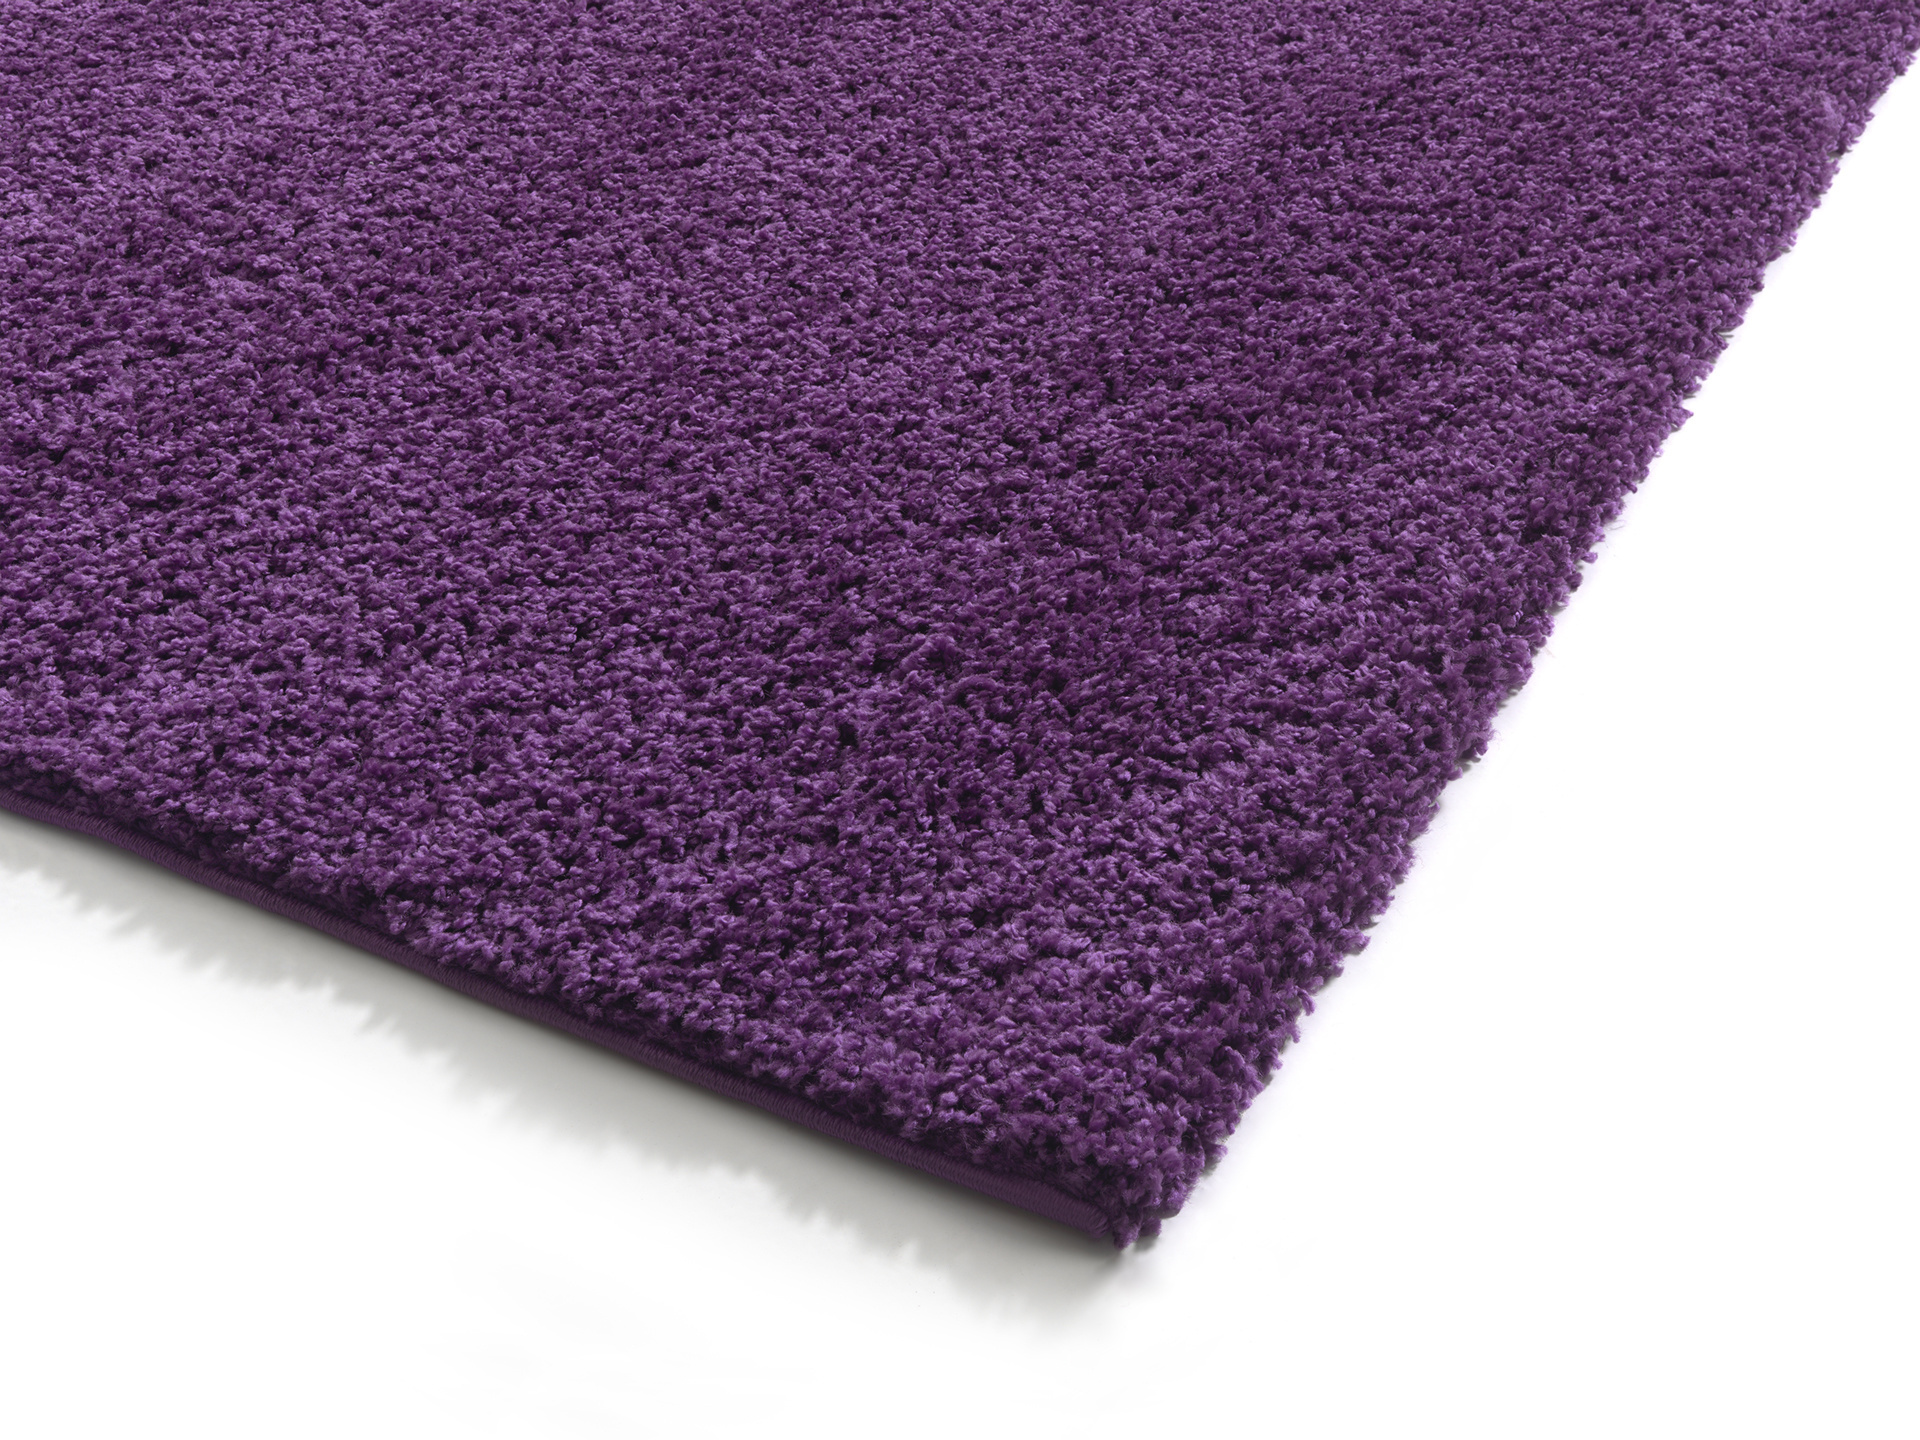 Ist Teppich schallabsorbierend?